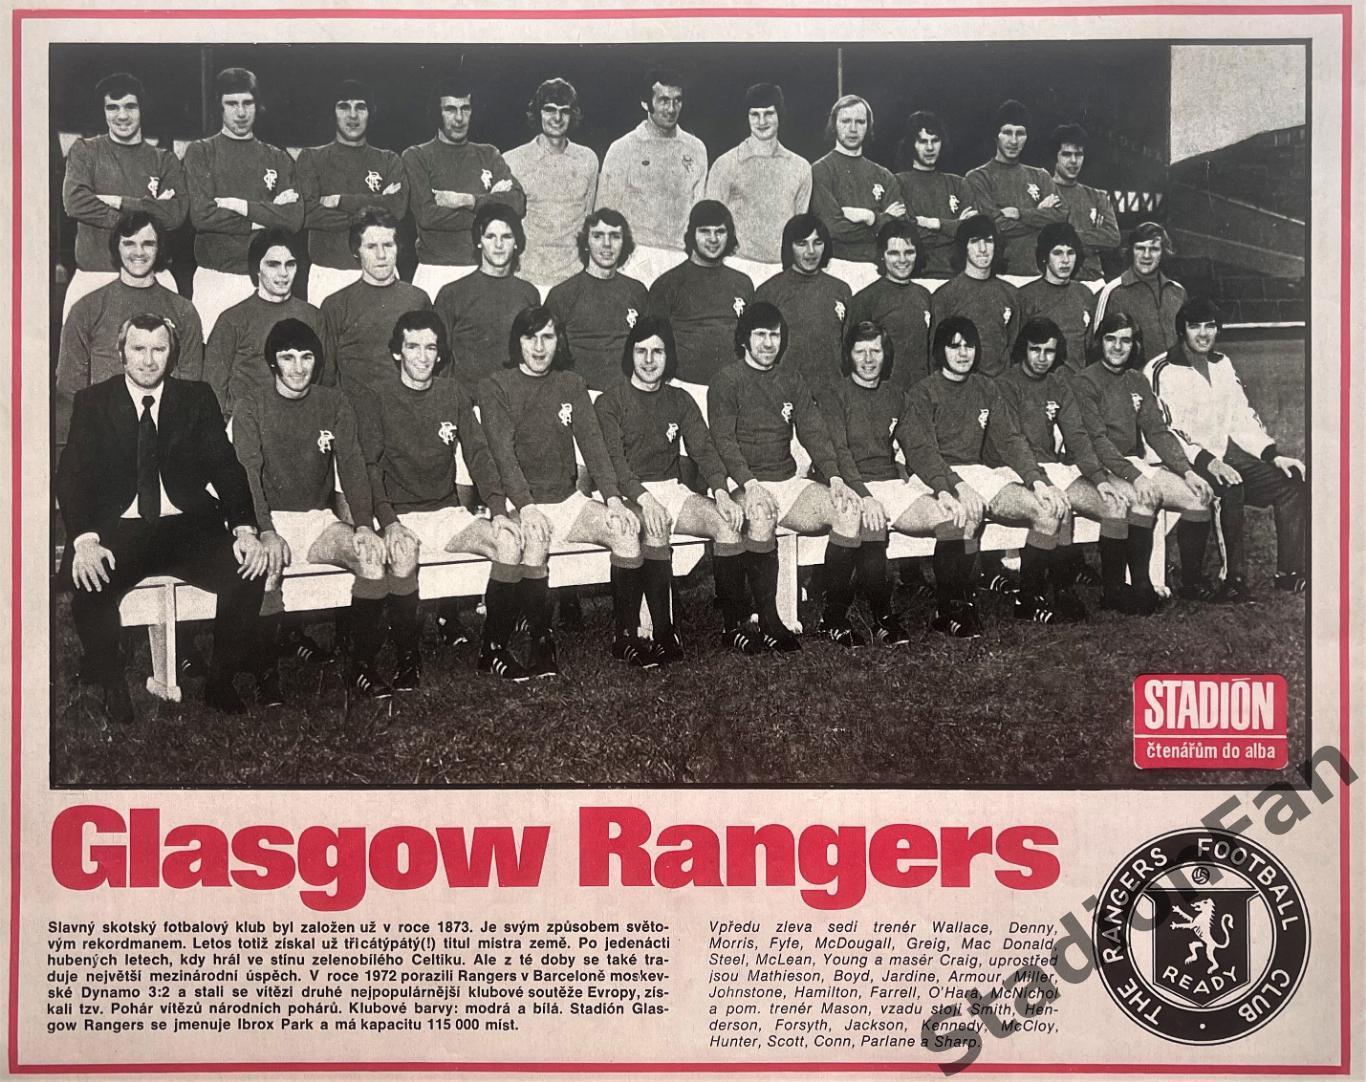 Постер из журнала Stadion - Glasgow Rangers, 1975.